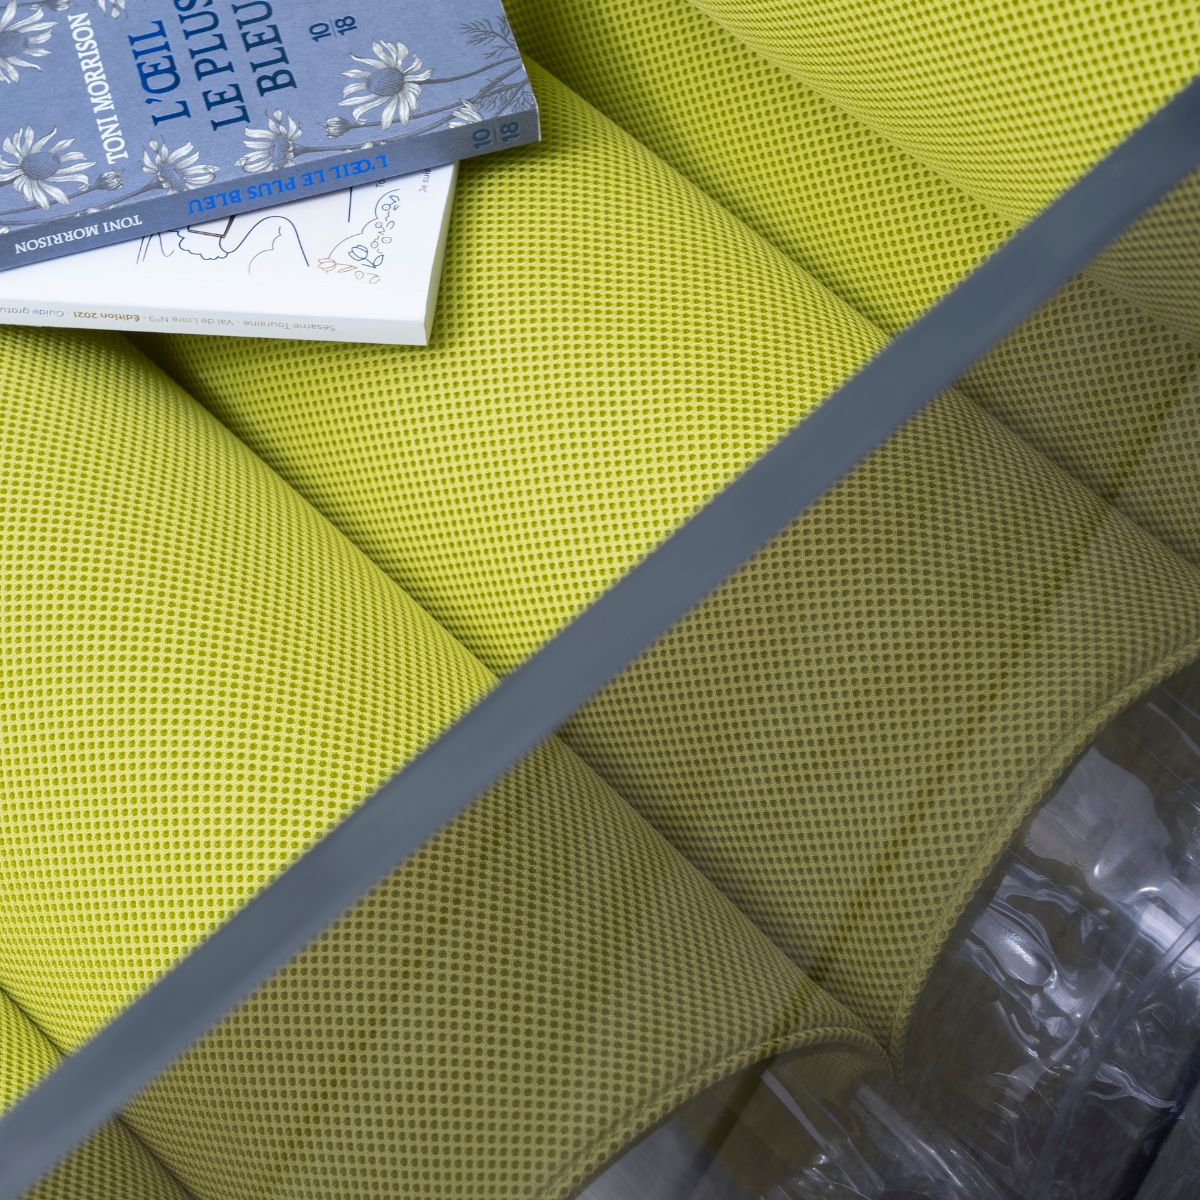 MW01 - Fauteuil structure PMMA, transparent et jaune